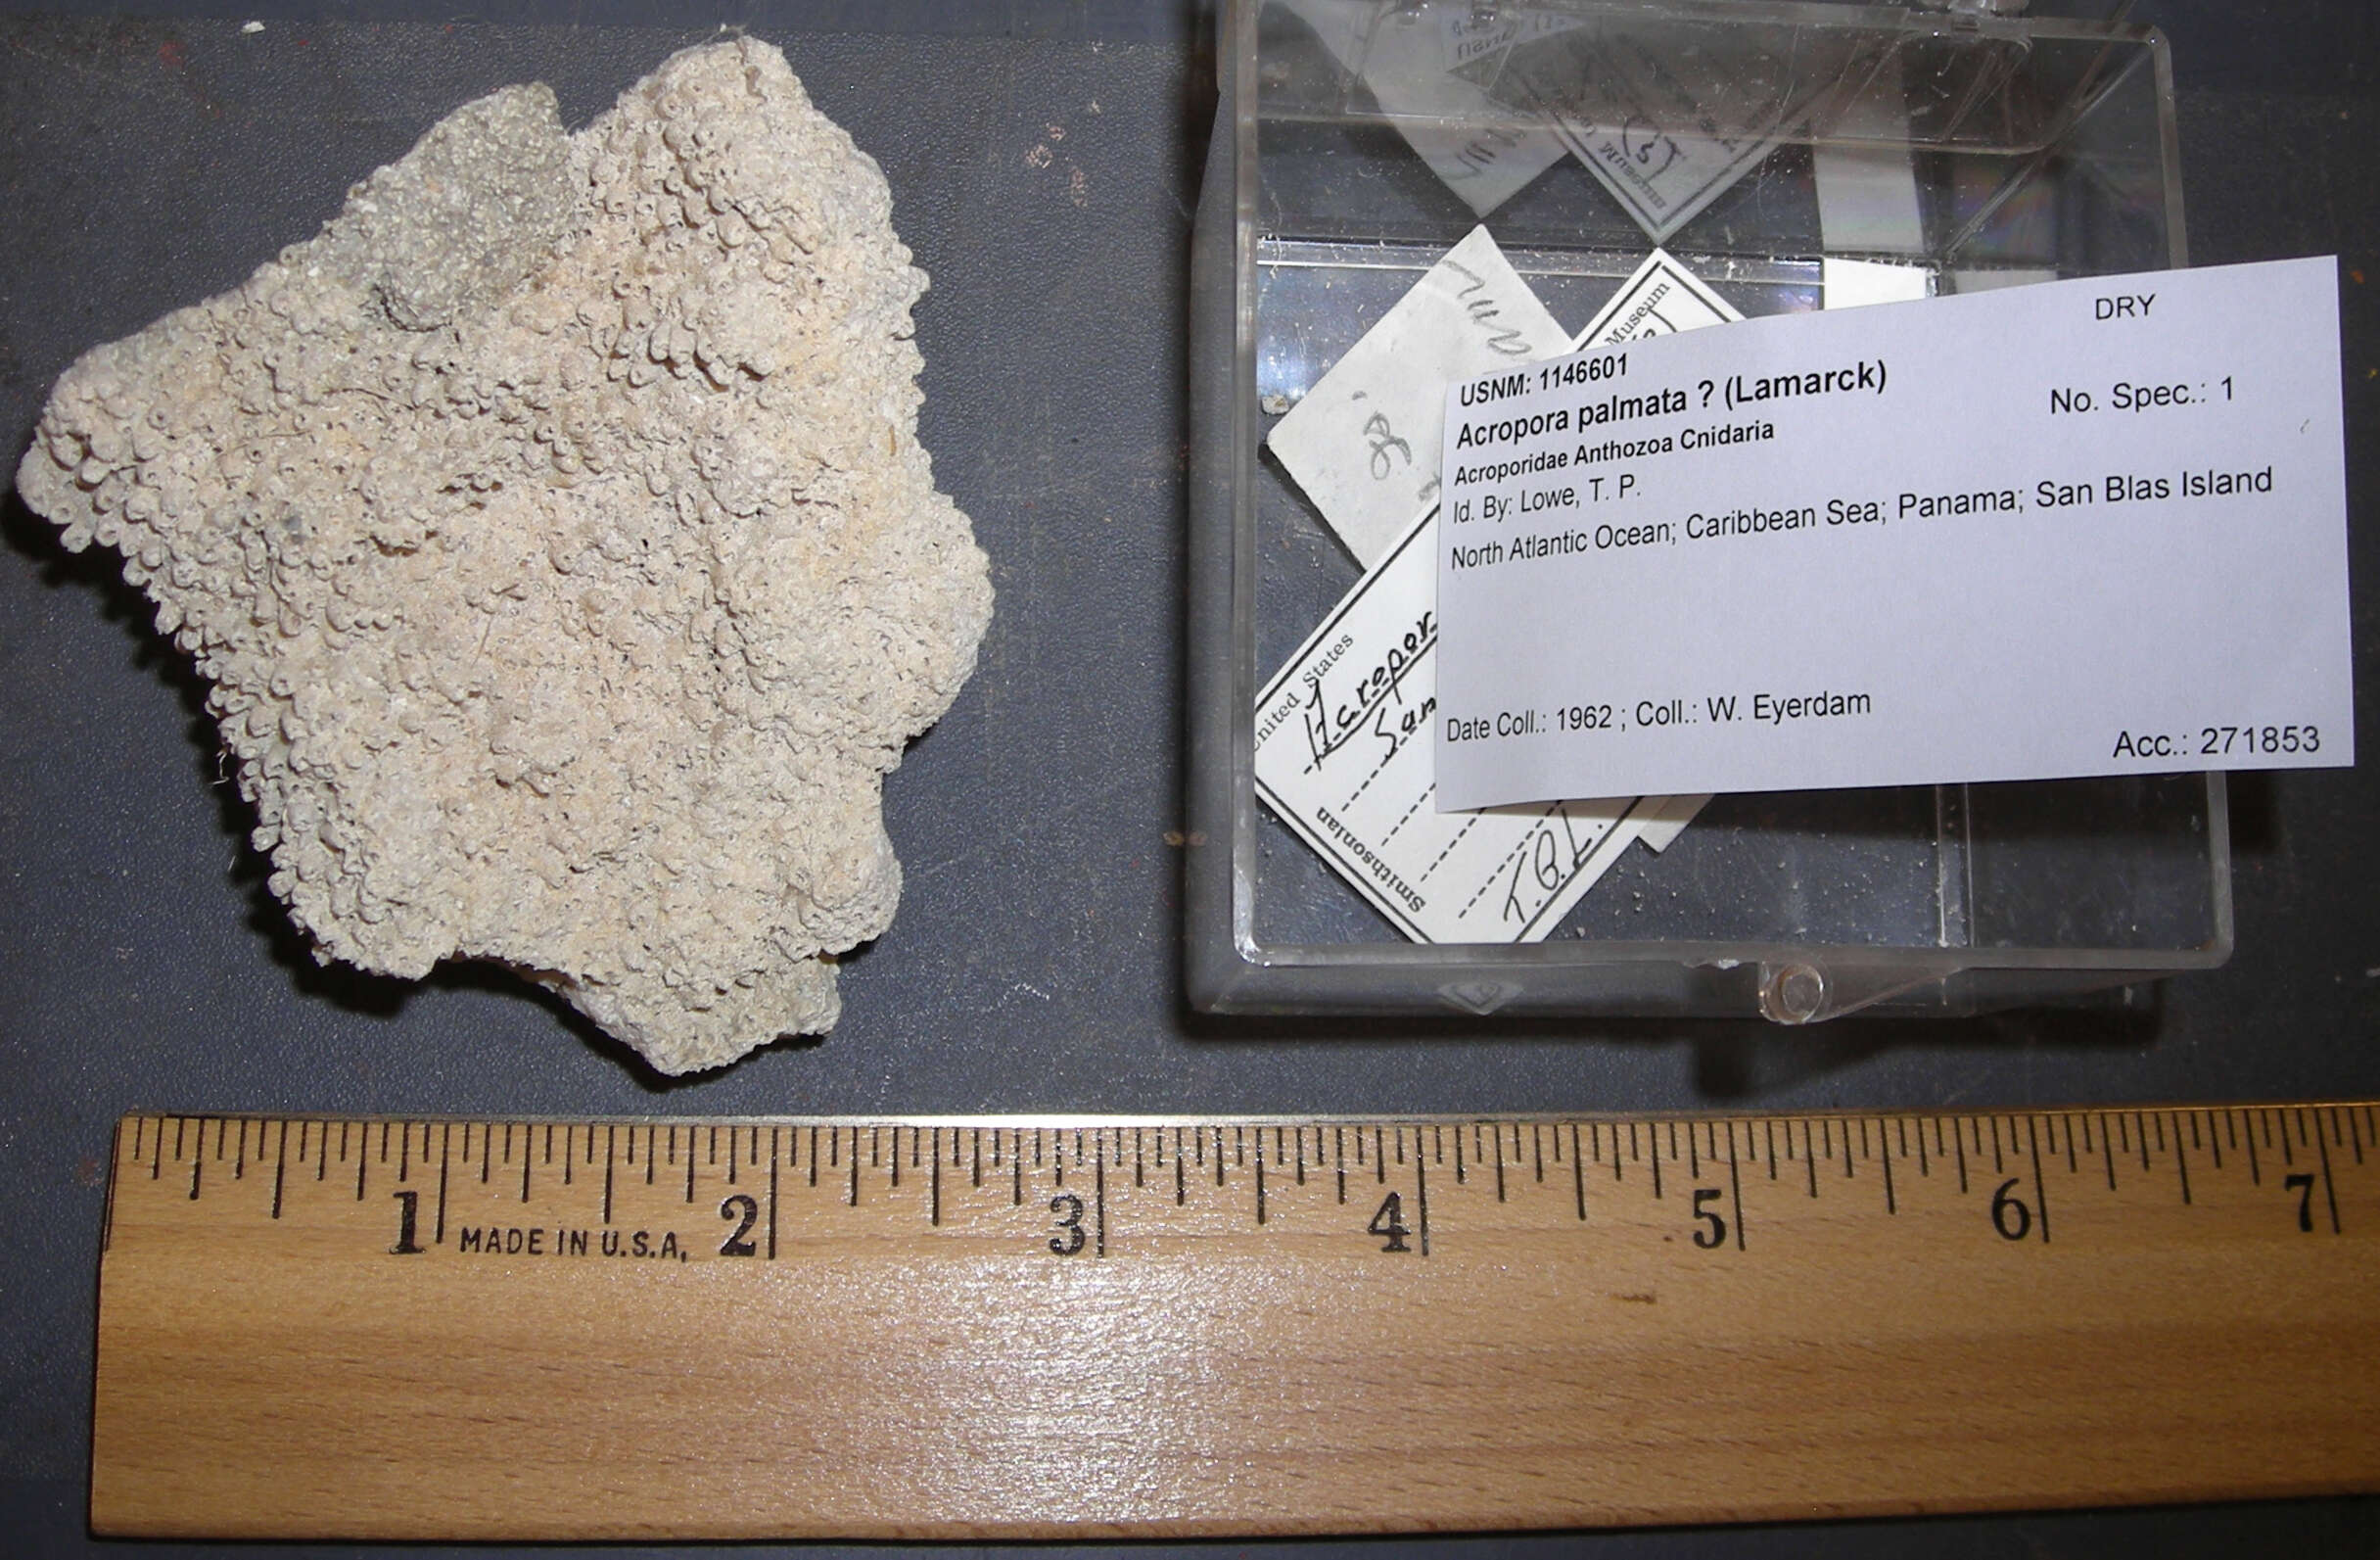 Image of Elkhorn Coral